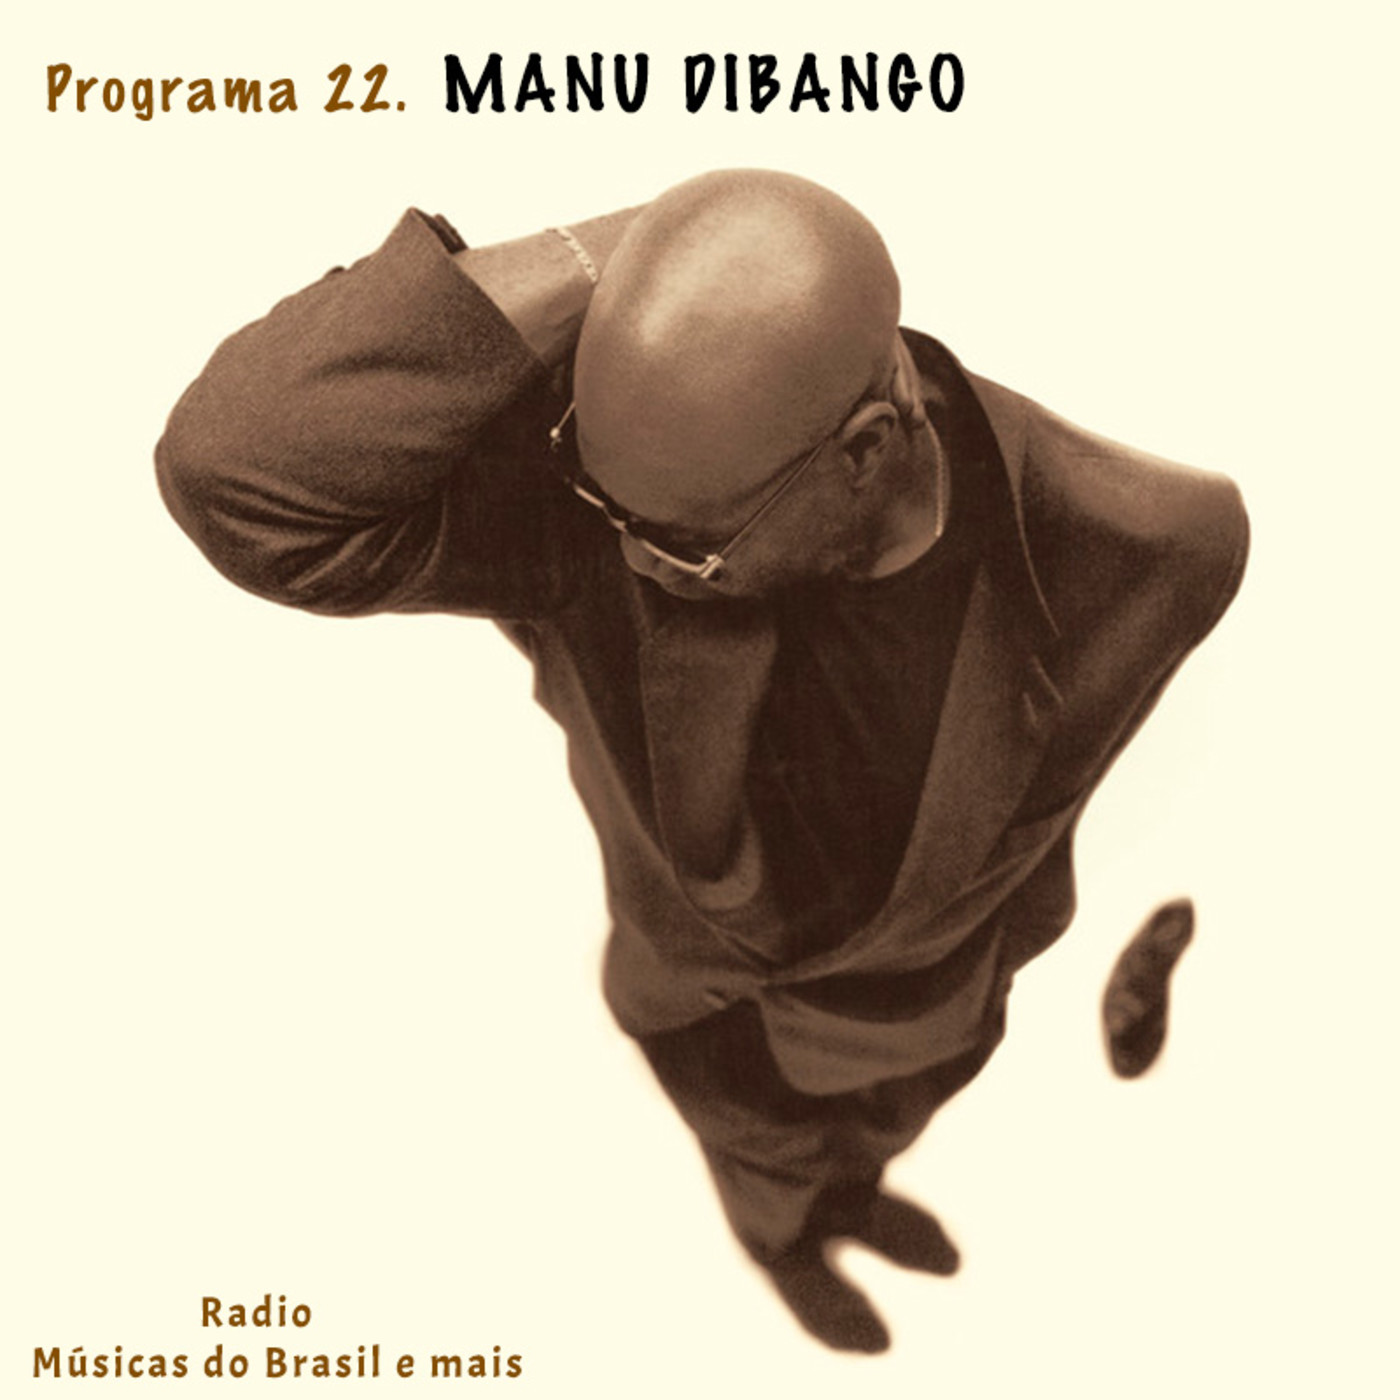 Programa 22. "Manu Dibango" (Radio Musicas do Brasil e mais)